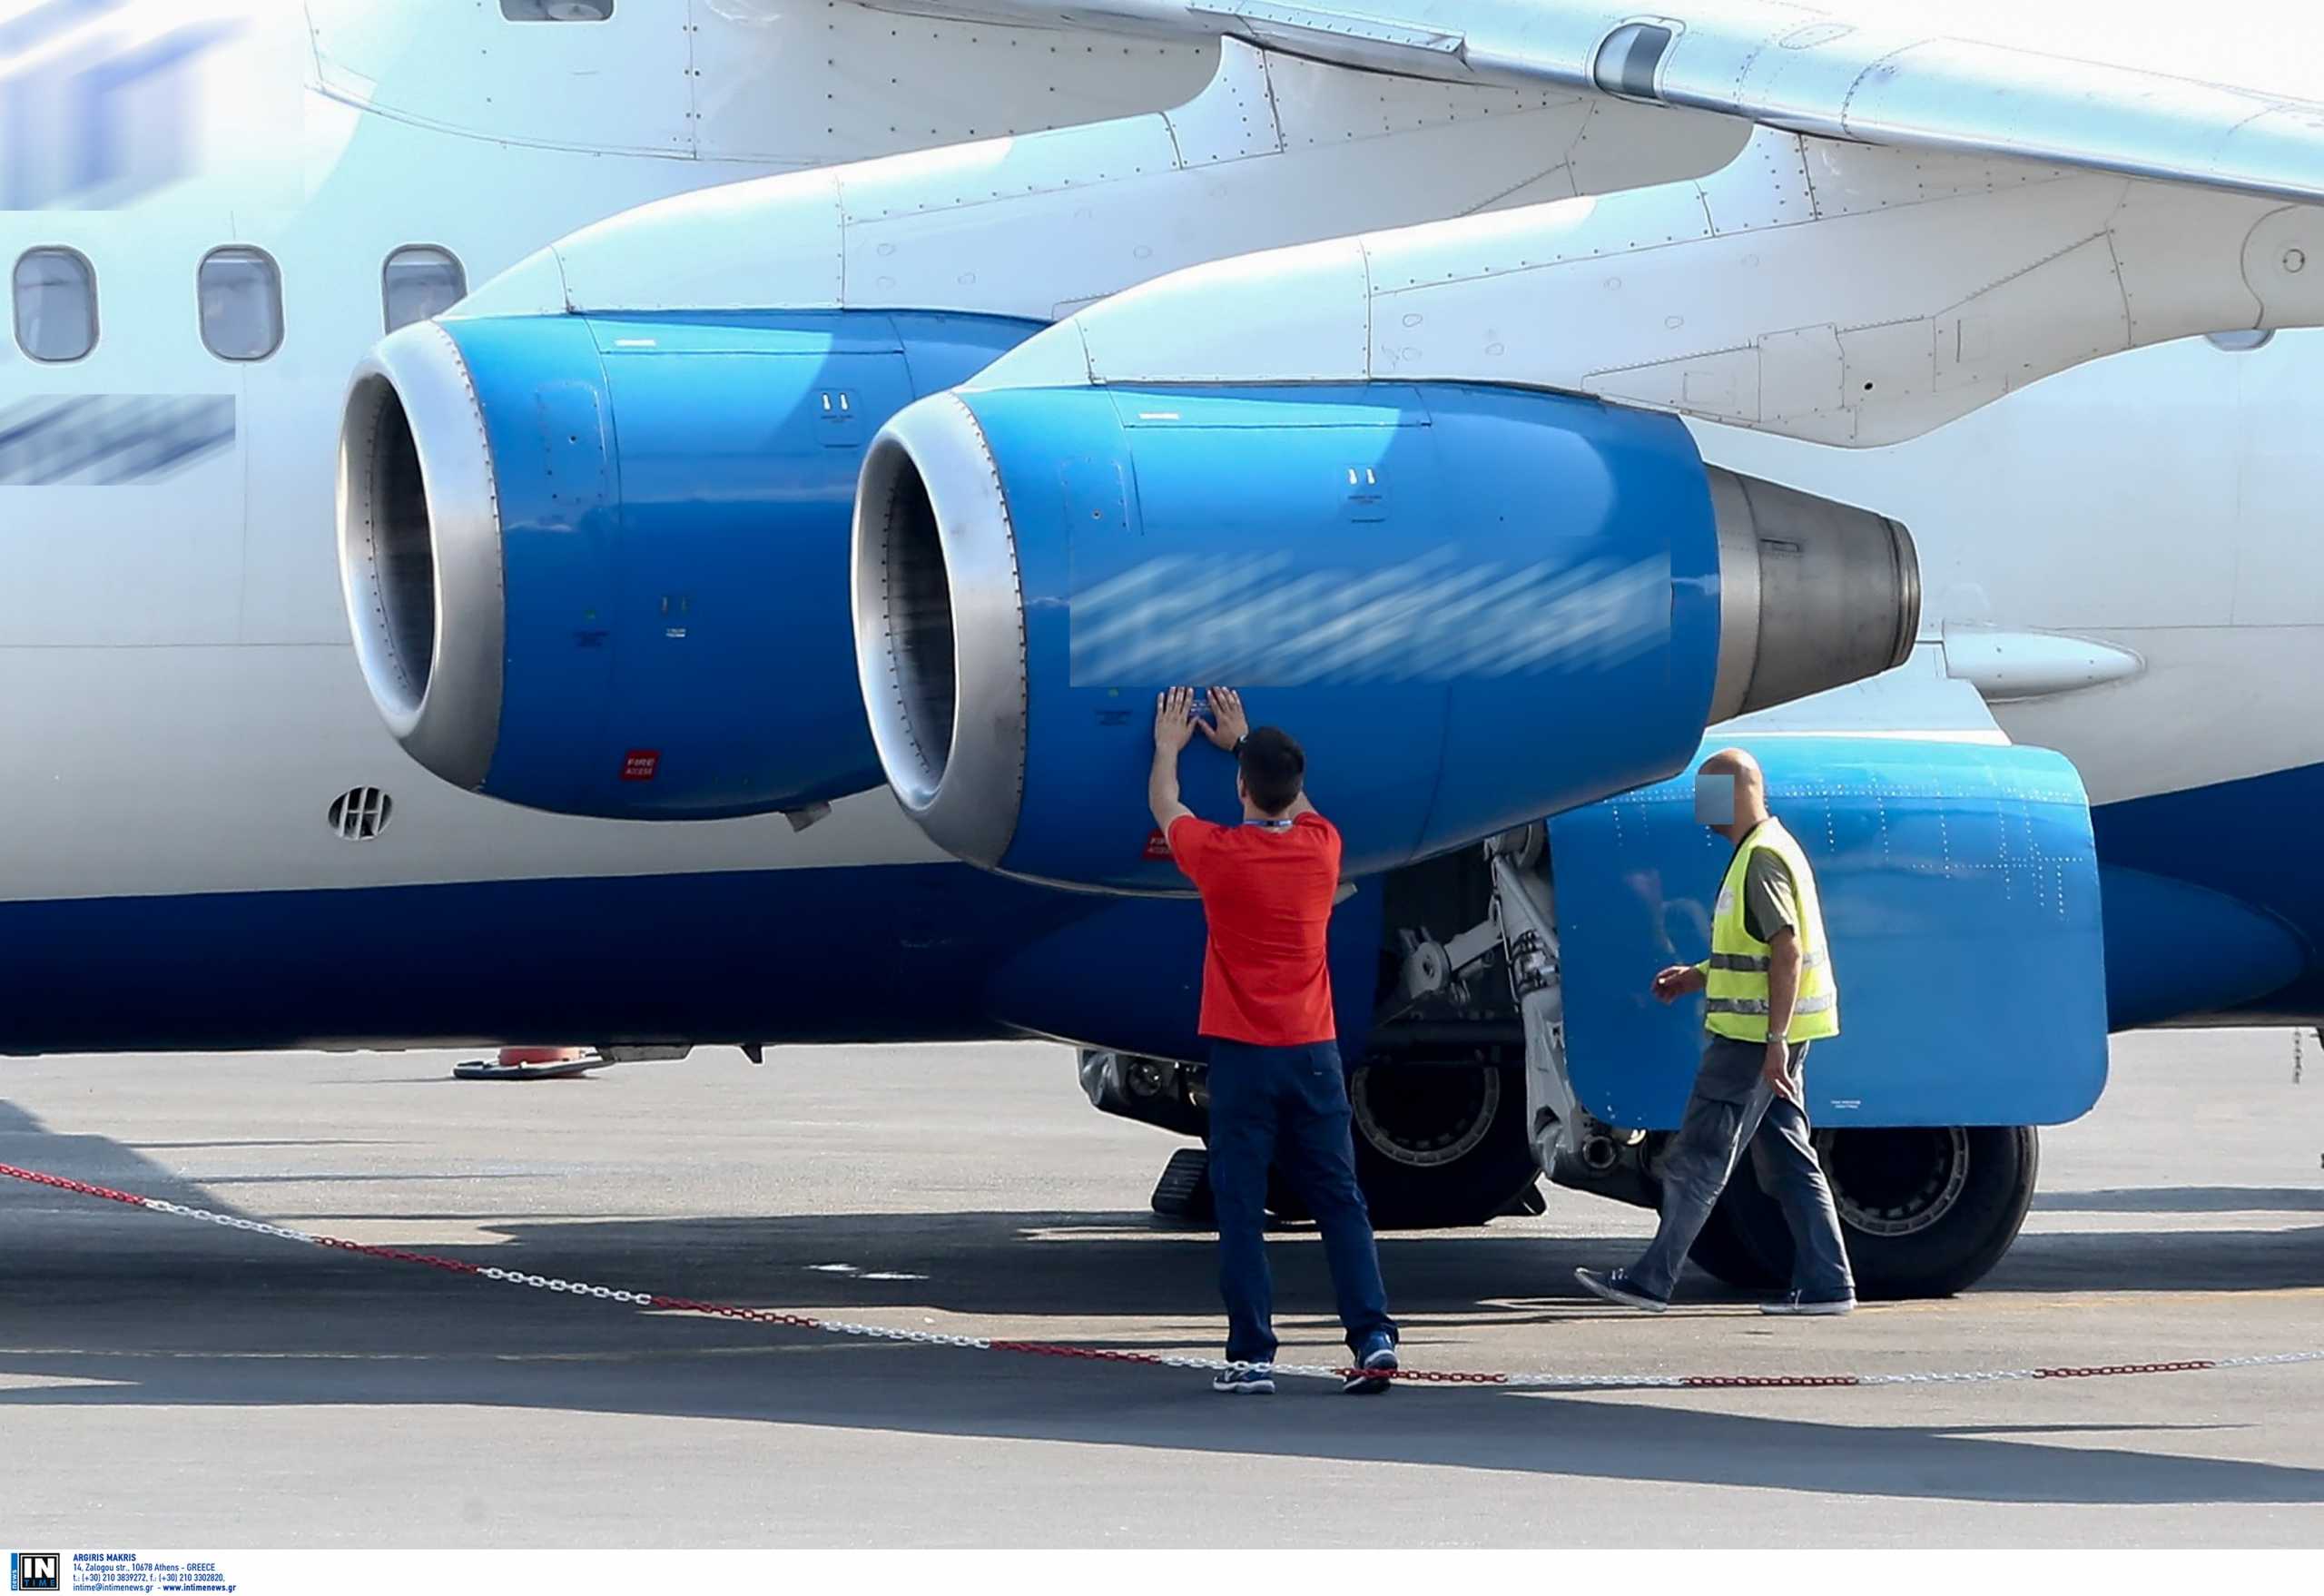 Κέρκυρα: Αναγκαστική προσγείωση αεροπλάνου που είχε προορισμό το Ντίσελντορφ